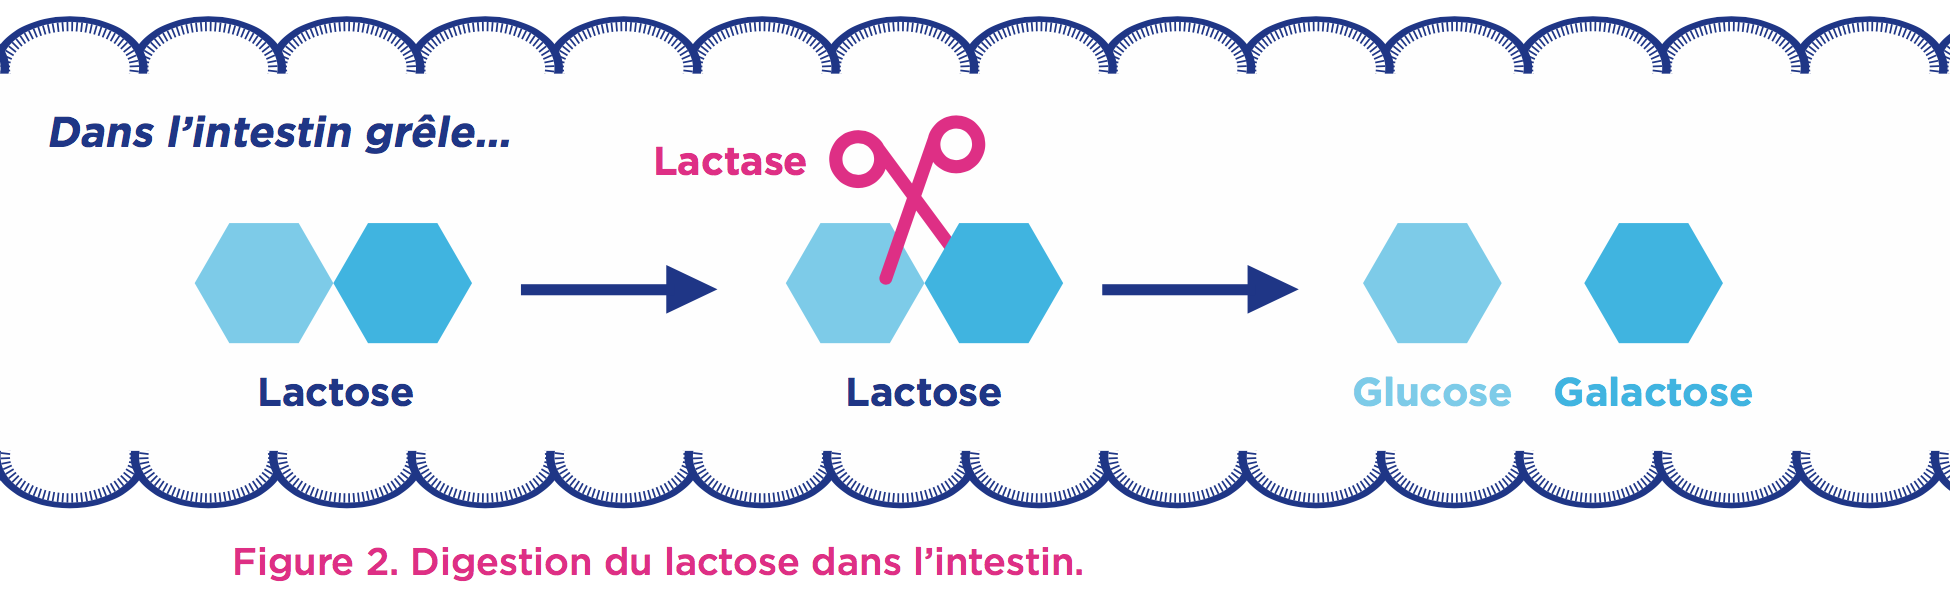 lactose-glucose